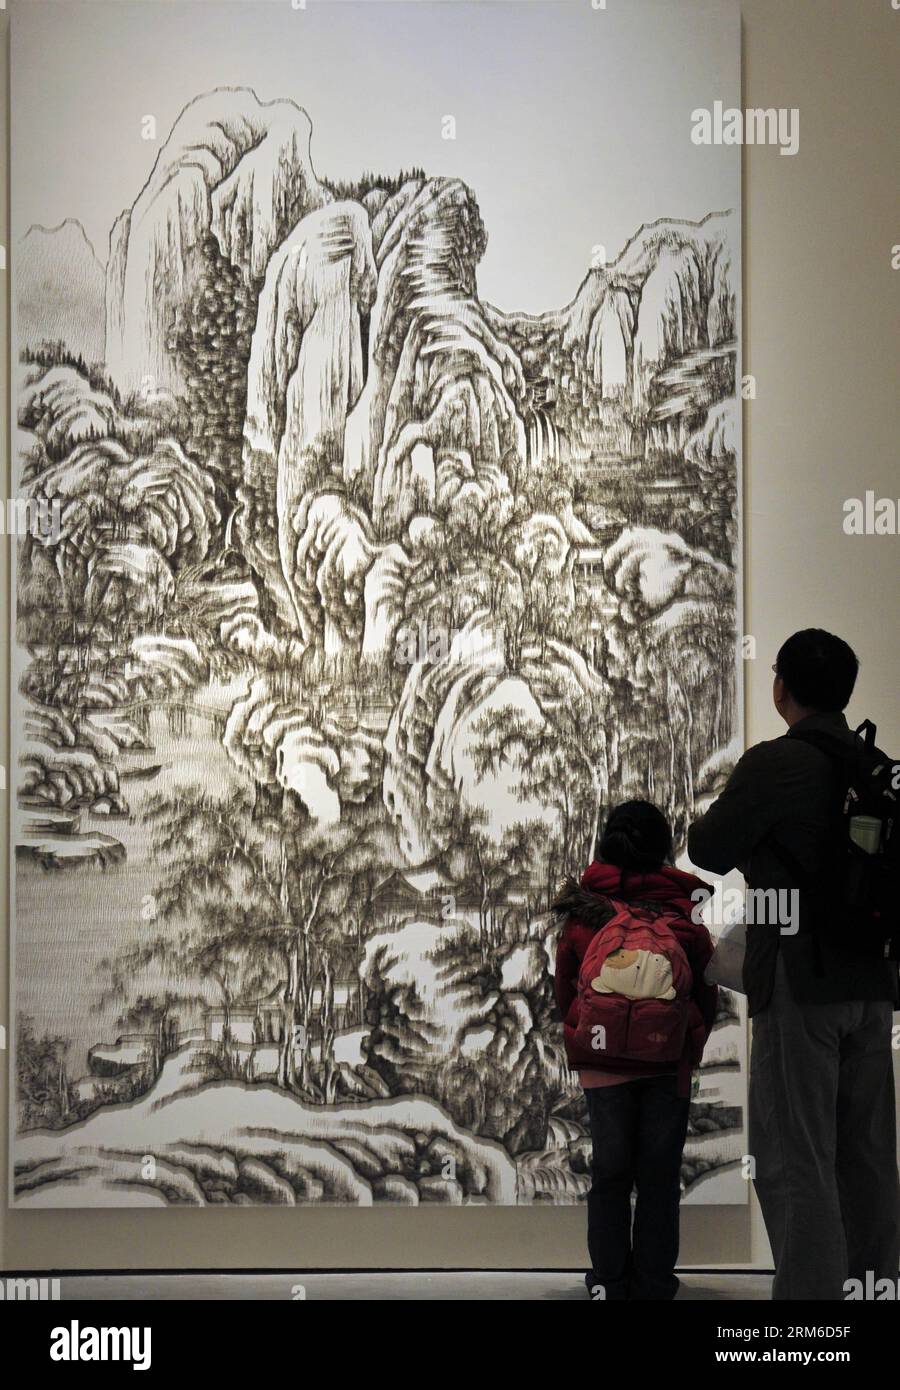 Die Besucher sehen ein Mückennagelbild in einer Ausstellung, die Chen Chun-Haos Schöpfung in Taipei, Taiwan im Südosten Chinas, am 4. Januar 2013 zeigt. Chen ist ein taiwanesischer Künstler, der Pinsel durch Nagelpistolen ersetzt, wenn er die traditionellen chinesischen Tintenbilder kopiert. Er verwendet eine Nagelpistole, um Tausende von kleinen Moskitonägeln oder kopflosen Nägeln in ein mit Leinwand bedecktes Holzbrett zu schießen, um traditionelle chinesische Meisterwerke der Tinte zu reproduzieren. (Xinhua/Wu Ching-teng) (hdt) CHINA-TAIPEI-MÜCKENNAGELMALEREI (CN) PUBLICATIONxNOTxINxCHN Besucher Sehen Sie sich ein Mückennagelgemälde AUF DER Ausstellung AN, die Chen Chun Hao S CRE zeigt Stockfoto